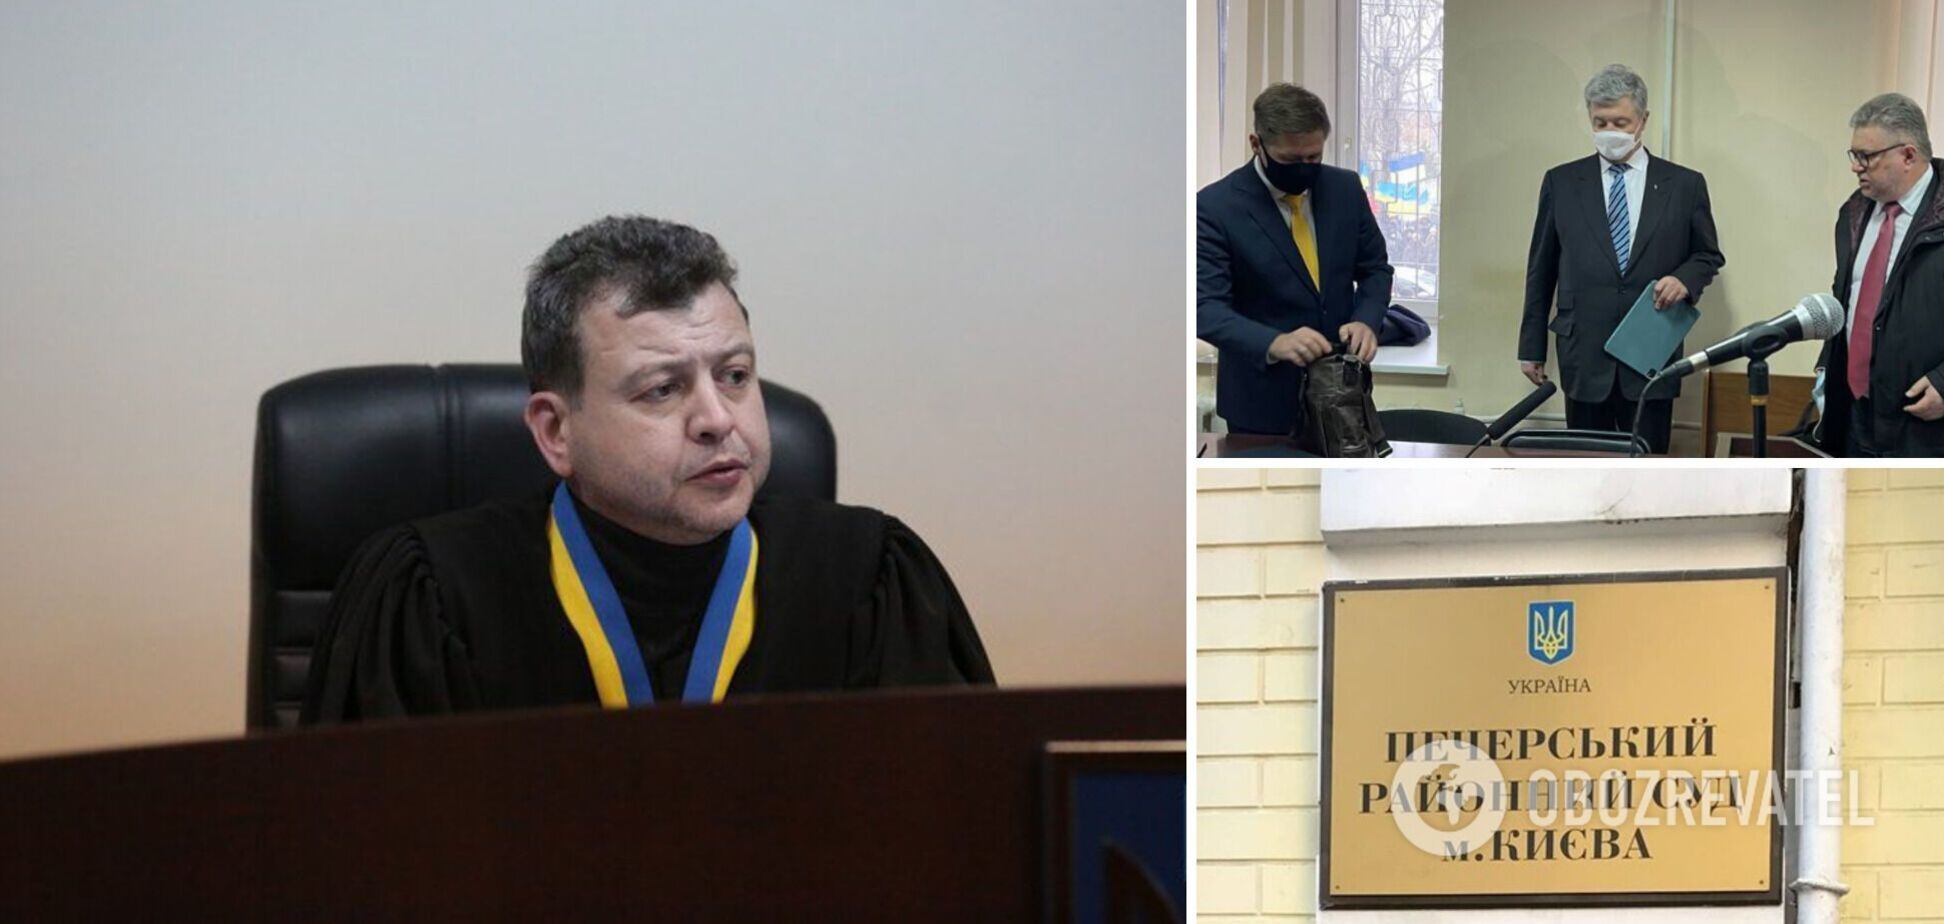 Судді Соколову, який обирає запобіжний захід Порошенку, раптово стало погано і викликали медиків, – Турчинов